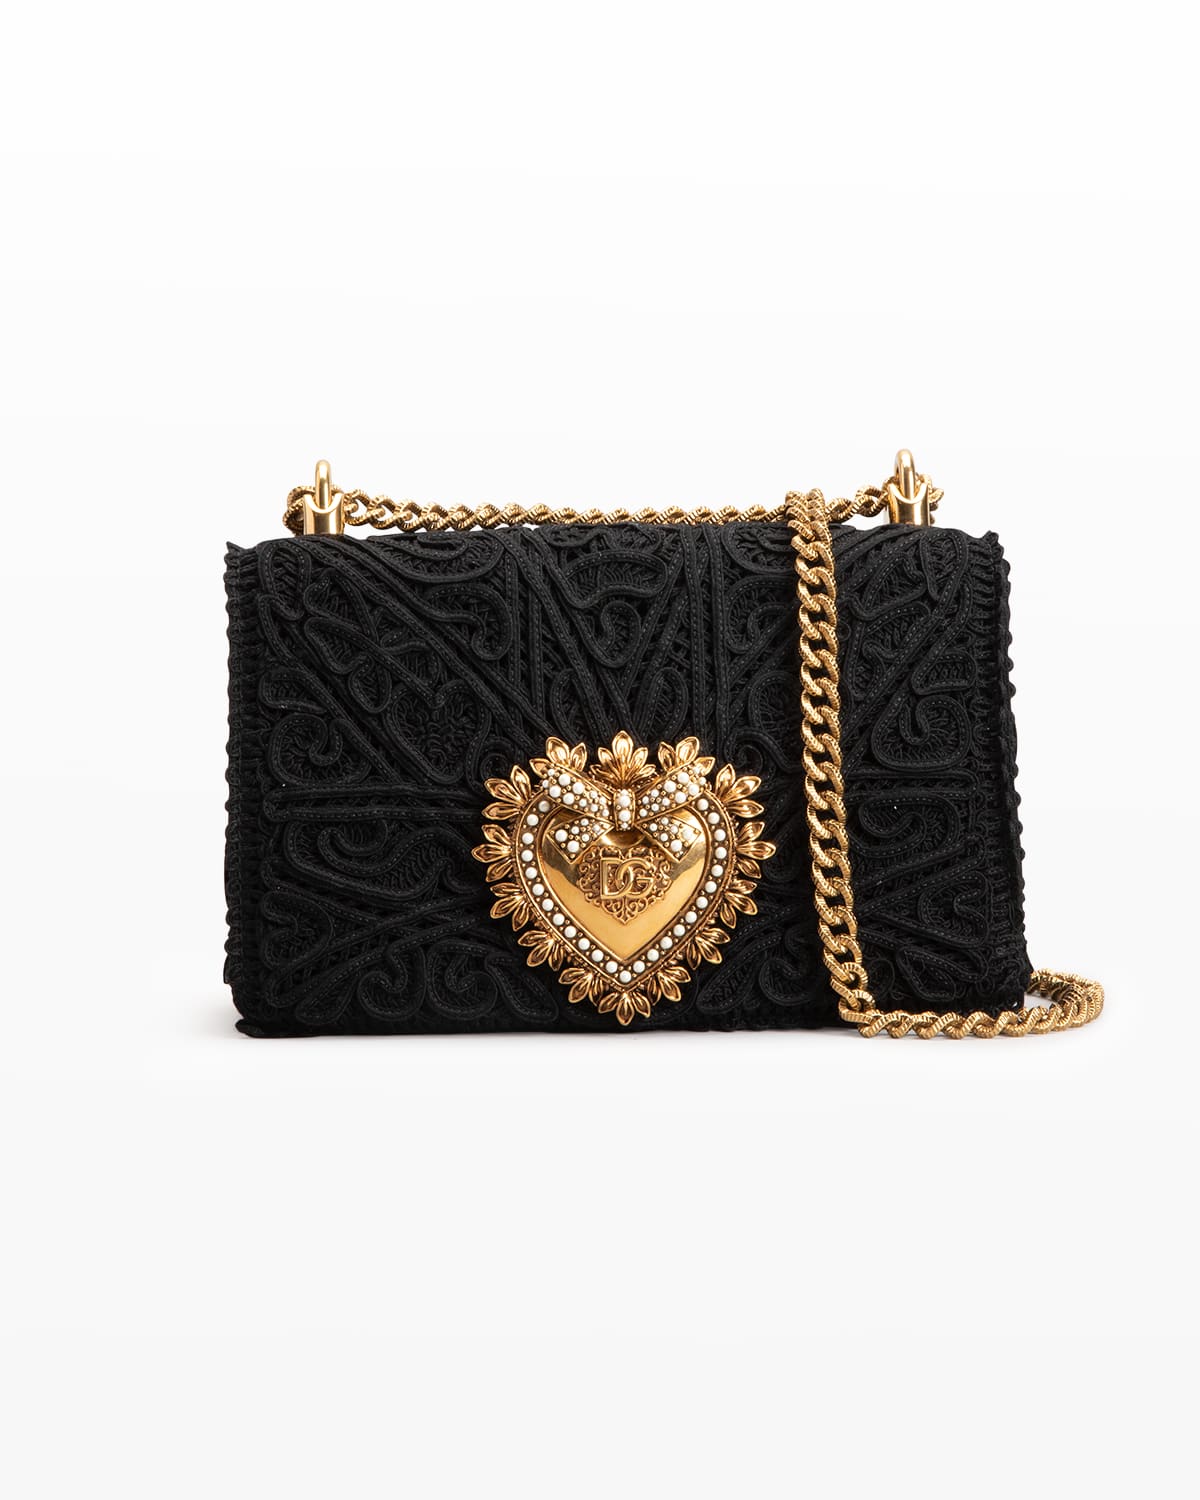 Dolce & Gabbana Devotion Medium Lace Chain Shoulder Bag